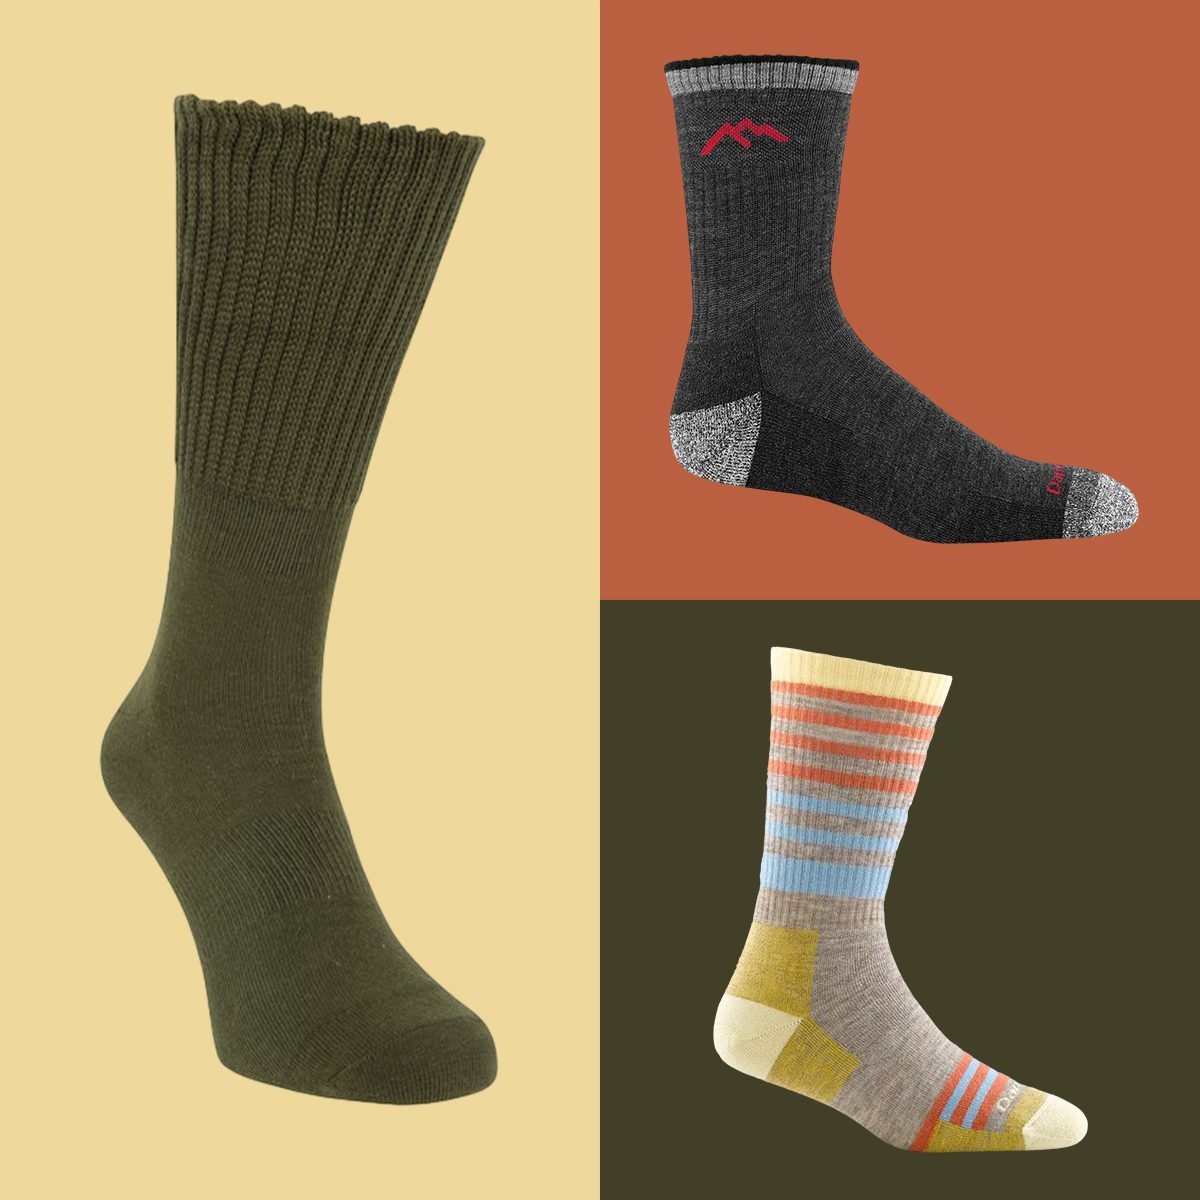 Hikers Wool or Merino Toe Socks? The best blister prevention